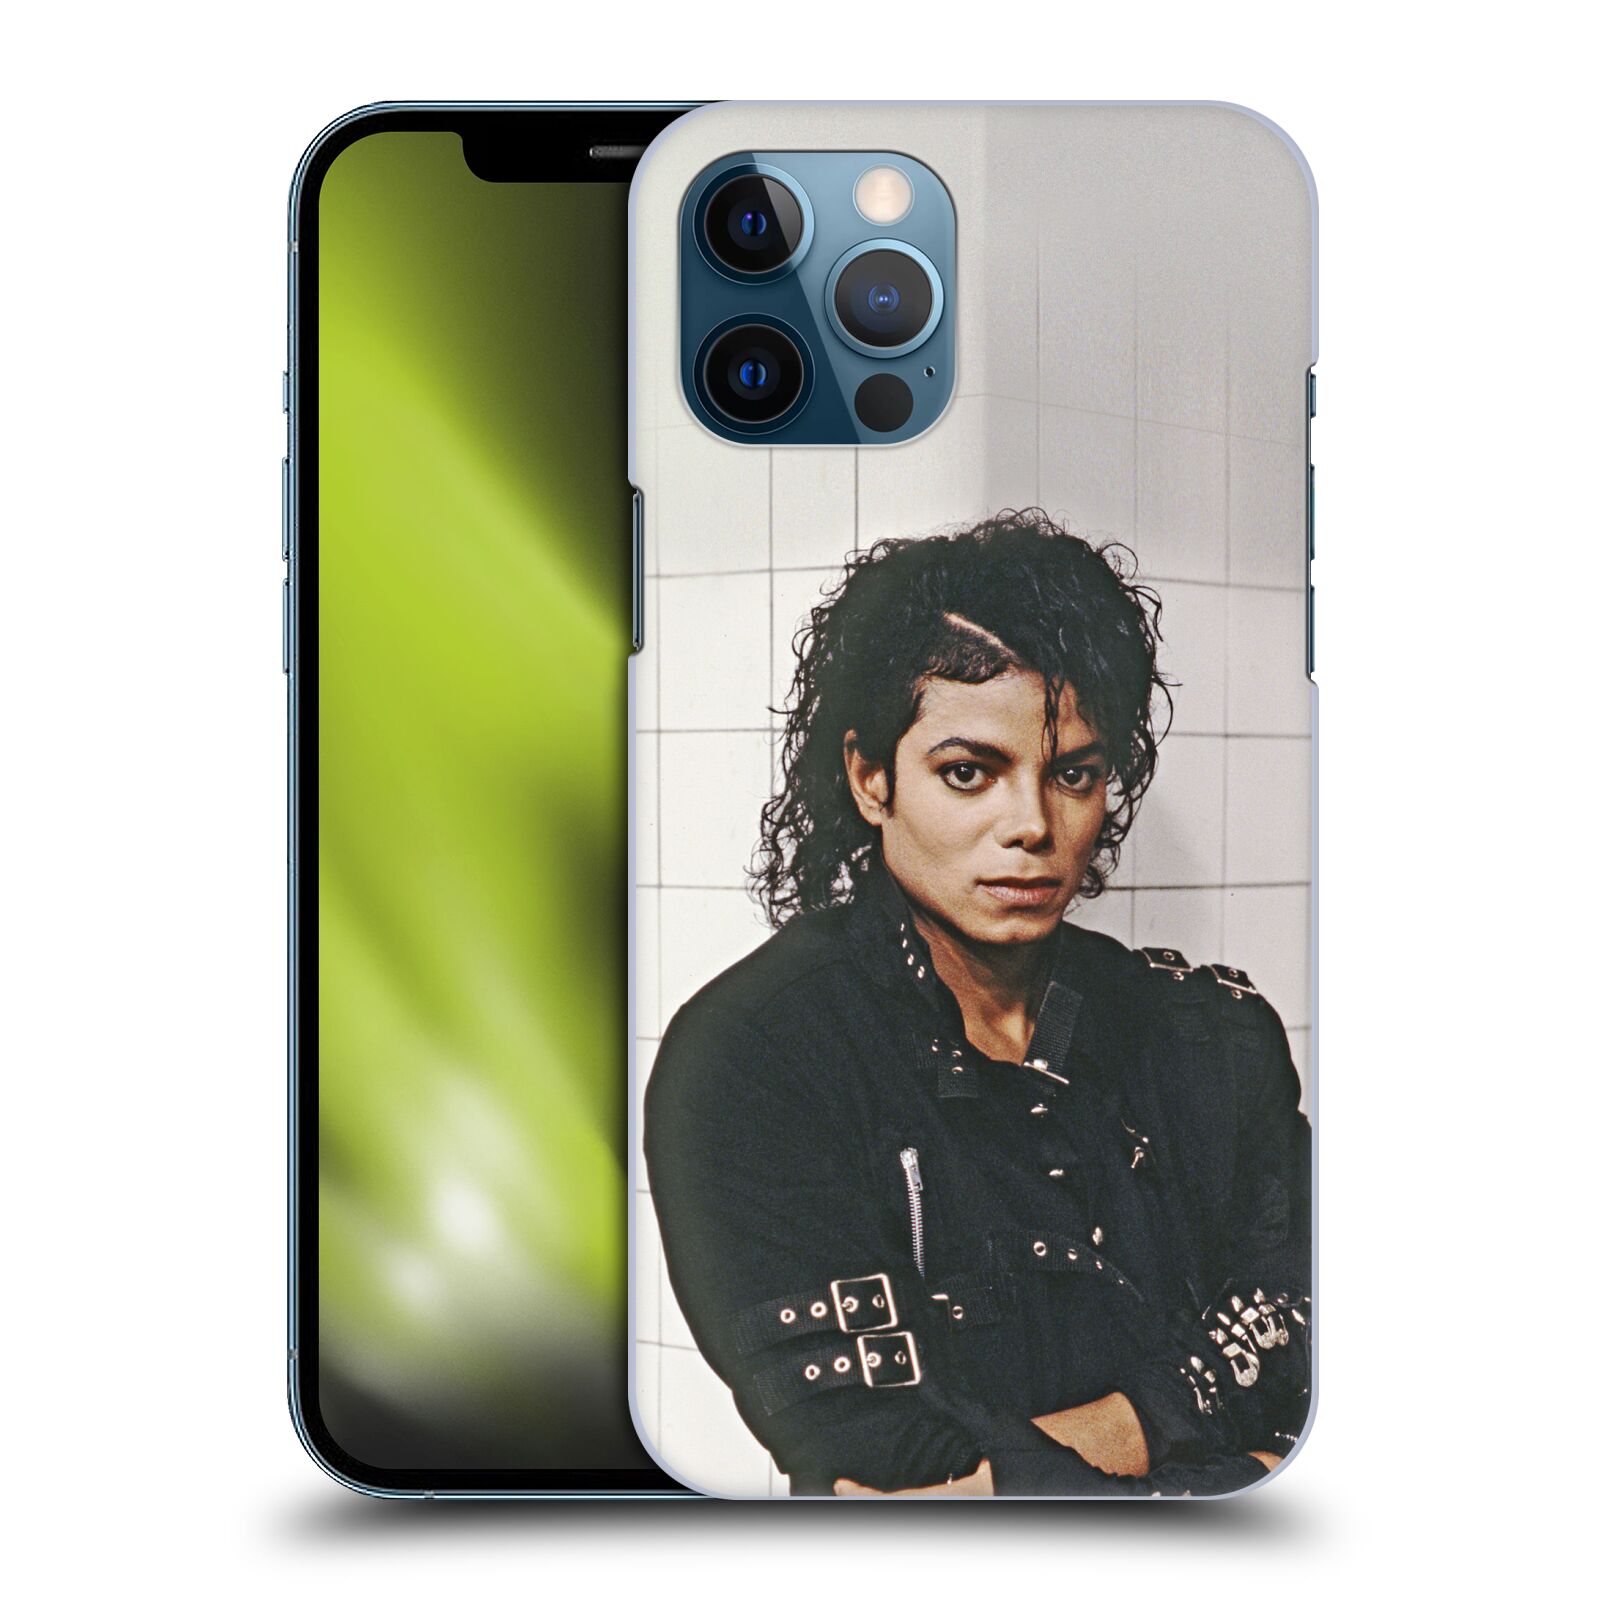 Zadní obal pro mobil Apple iPhone 12 PRO MAX - HEAD CASE - Zpěvák Michael Jackson - pohled